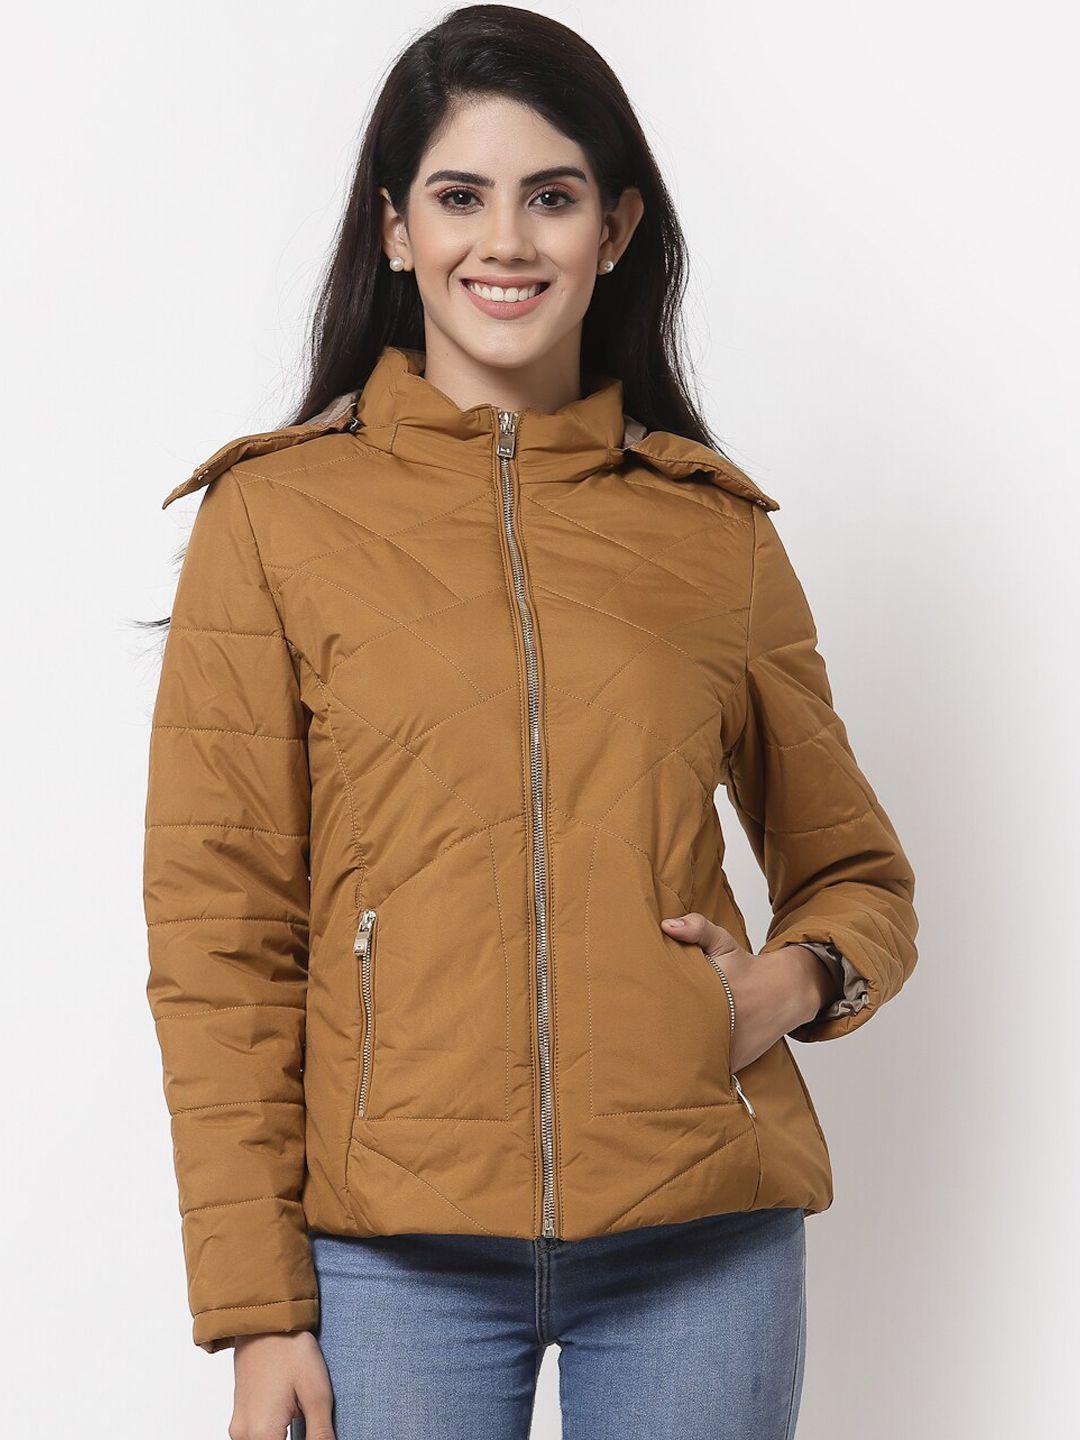 juelle-women-mustard-brown-puffer-jacket